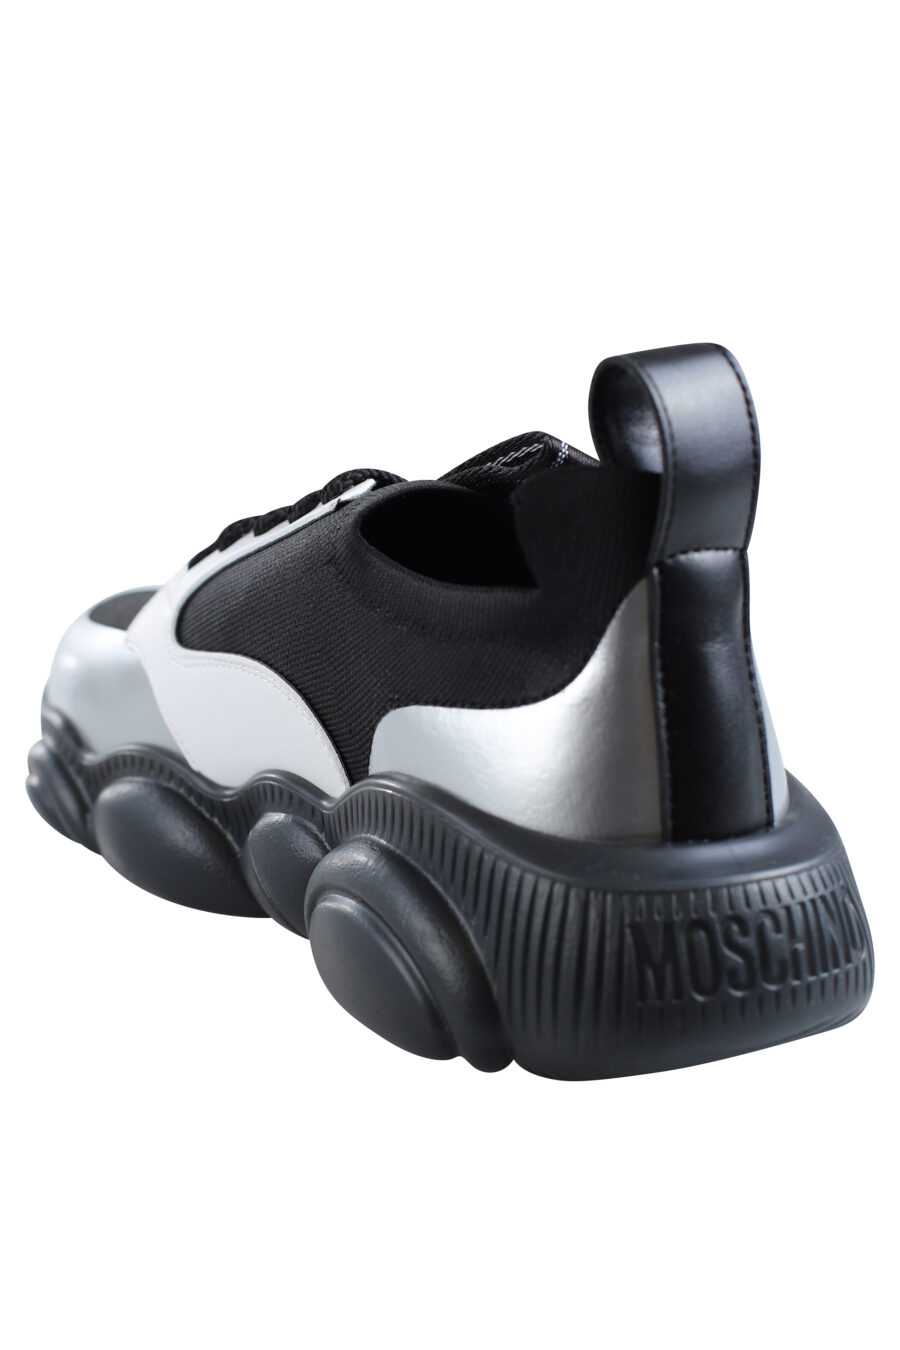 Zapatillas negras con blanco y plateado "orso35" - IMG 2000 1